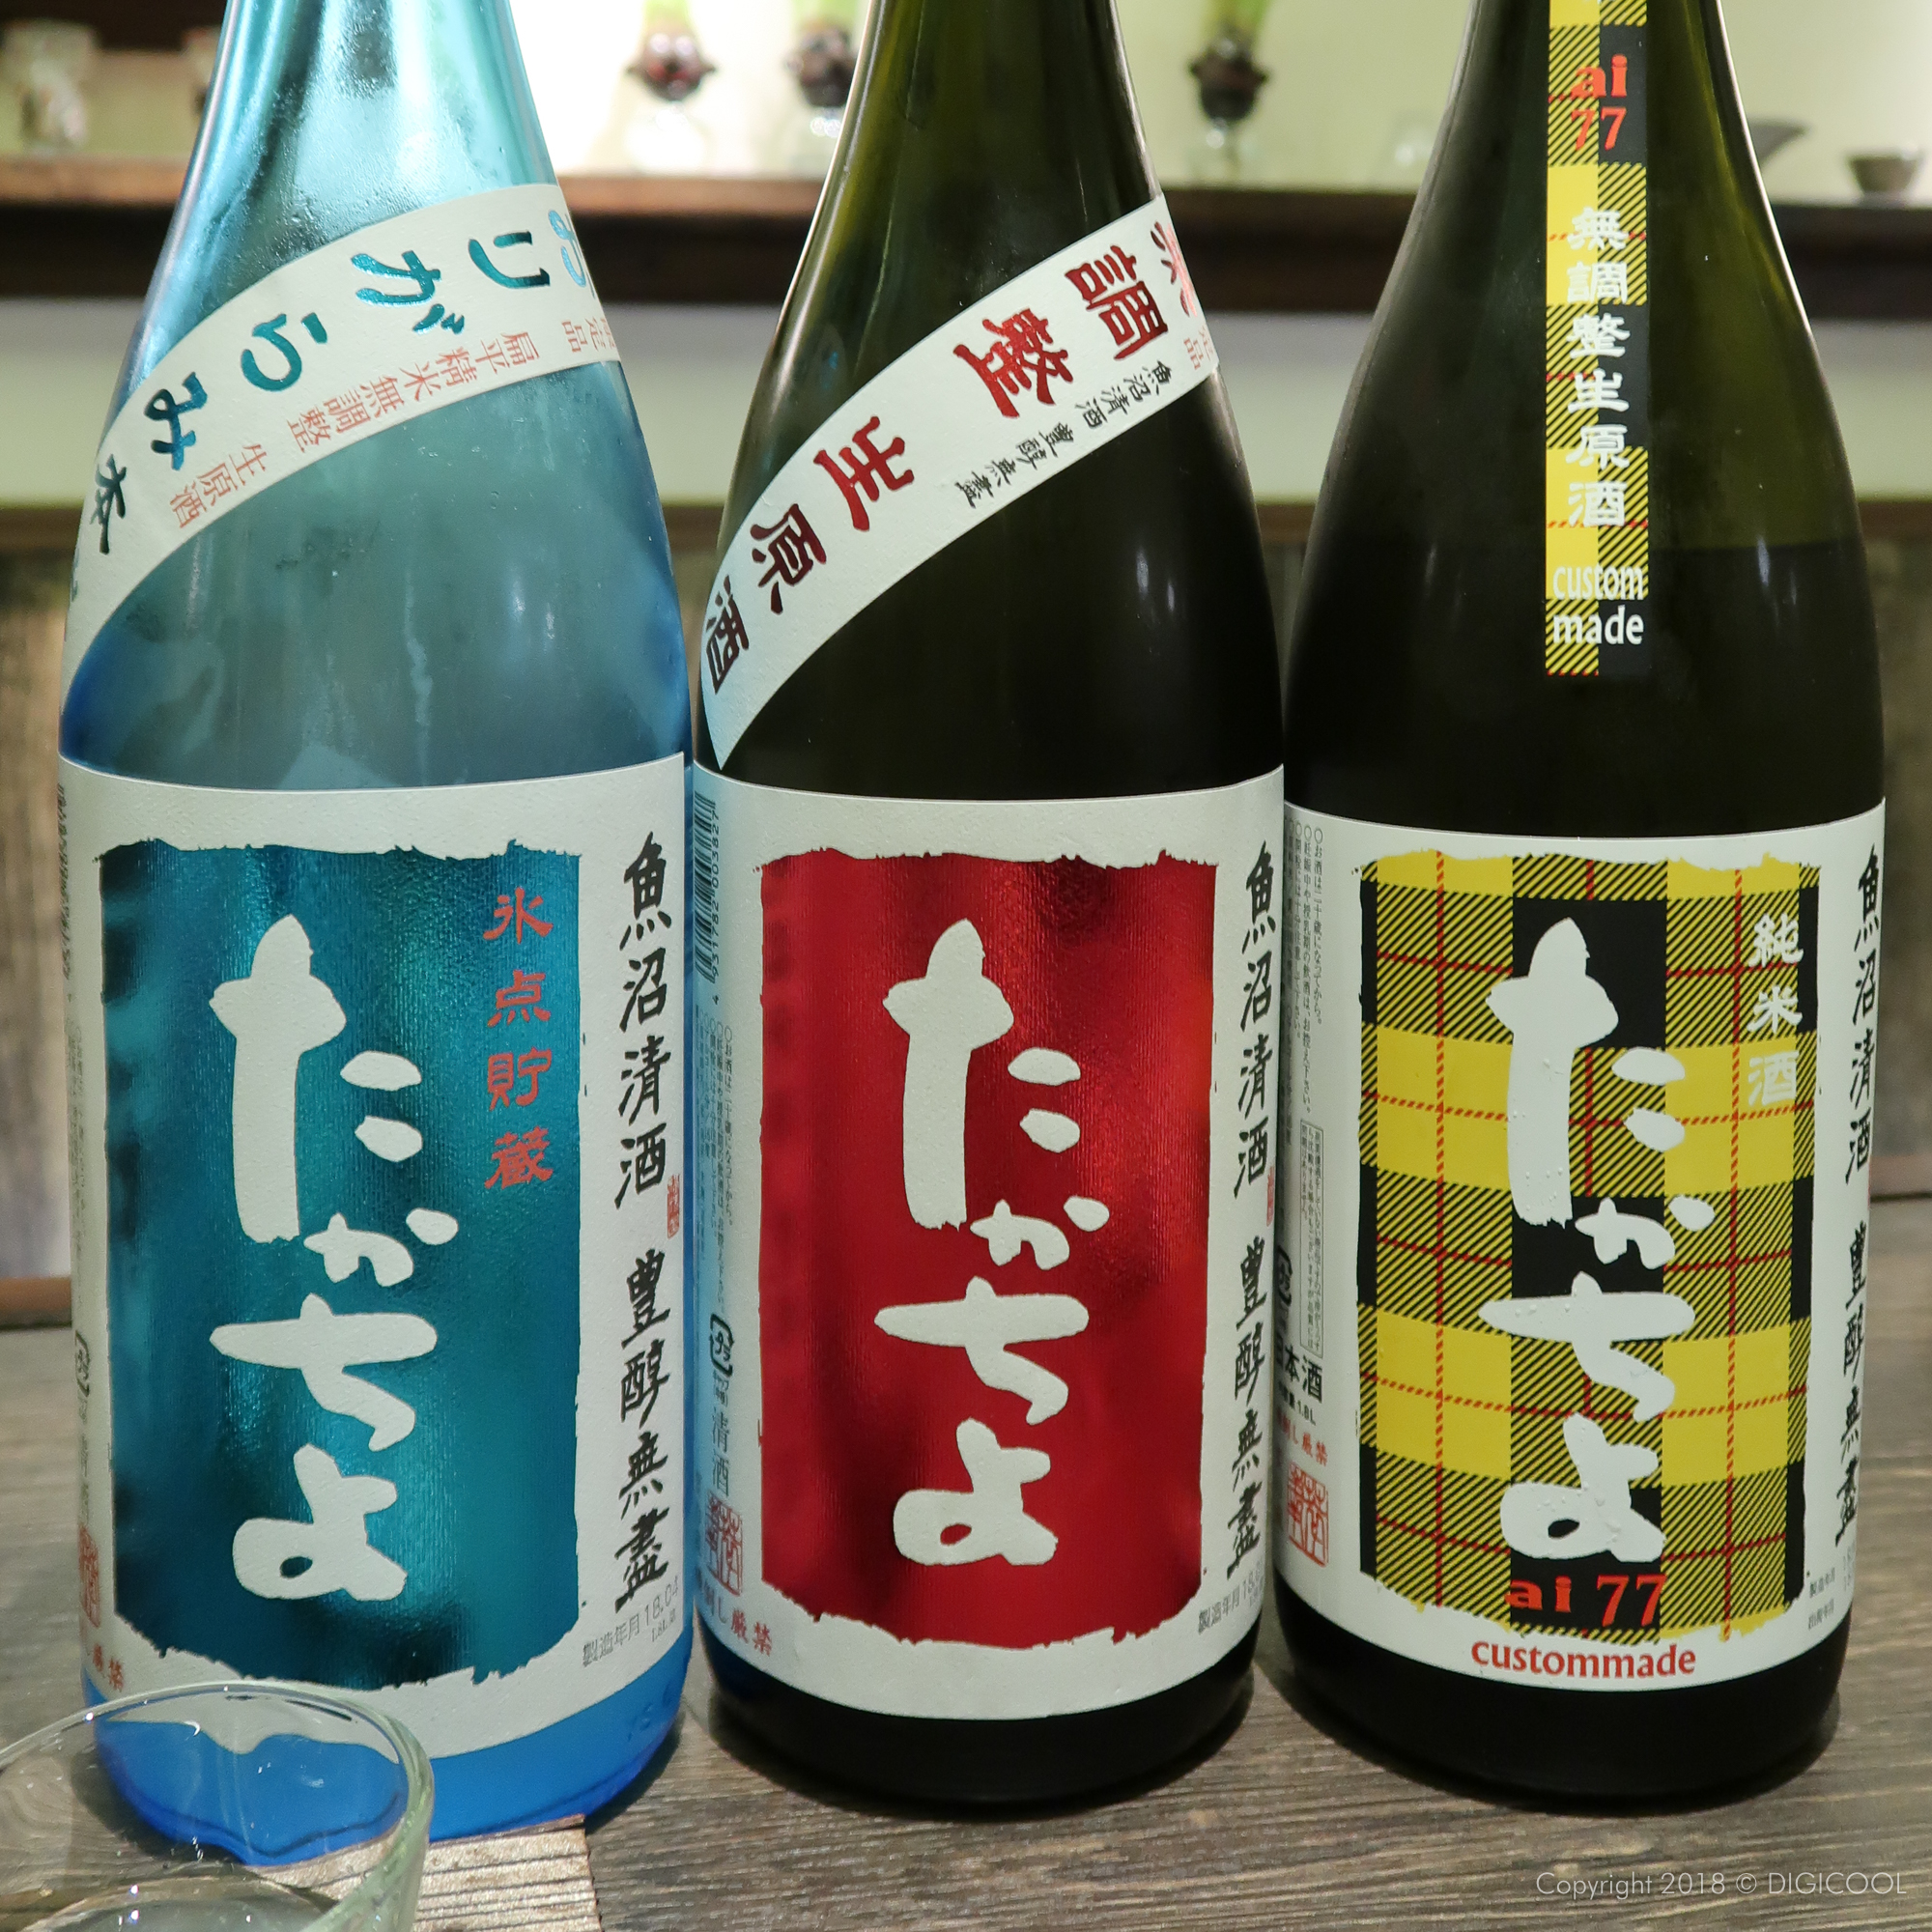 滋賀県近江八幡市・近江八幡の住宅街にあるこだわりラインナップの日本酒BAR「masu masu」に行ってきました。